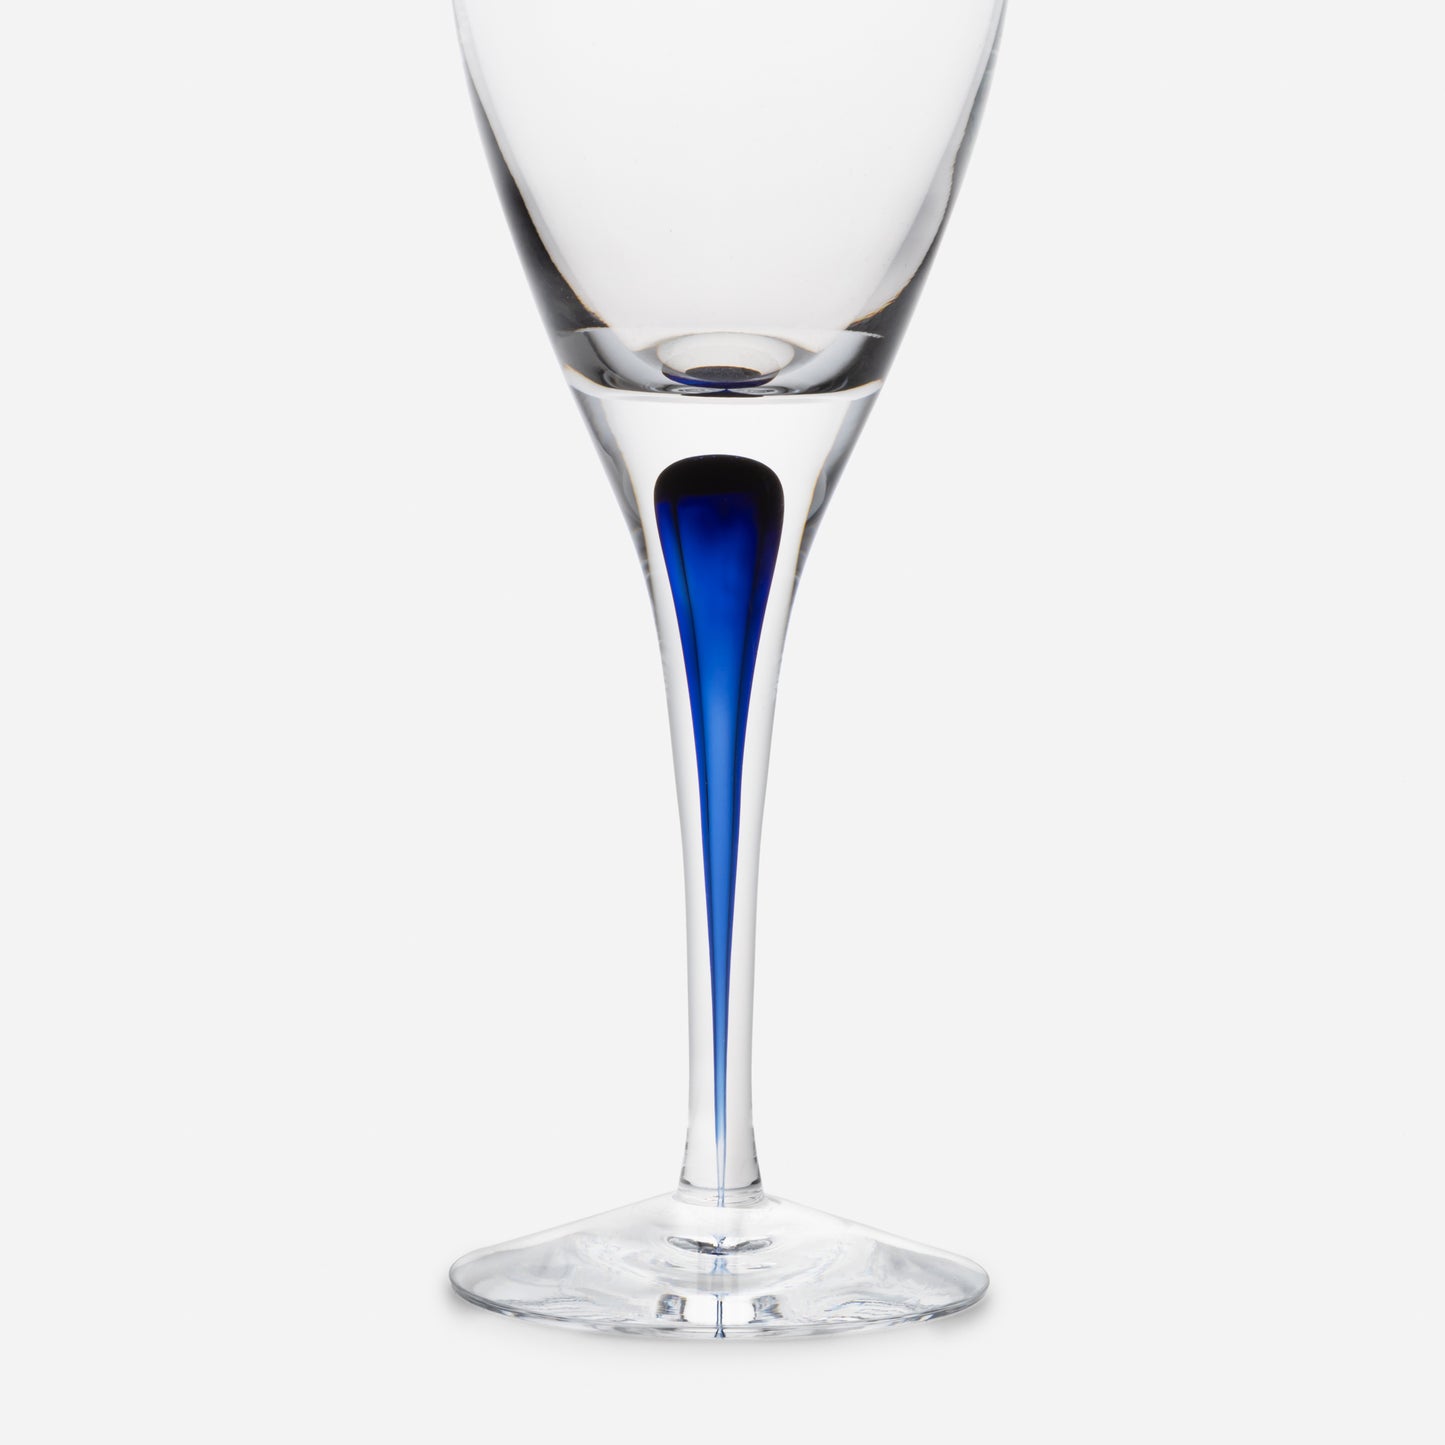 【ブルーのラインに魅了される】INTERMEZZO BLUE レッドワイン